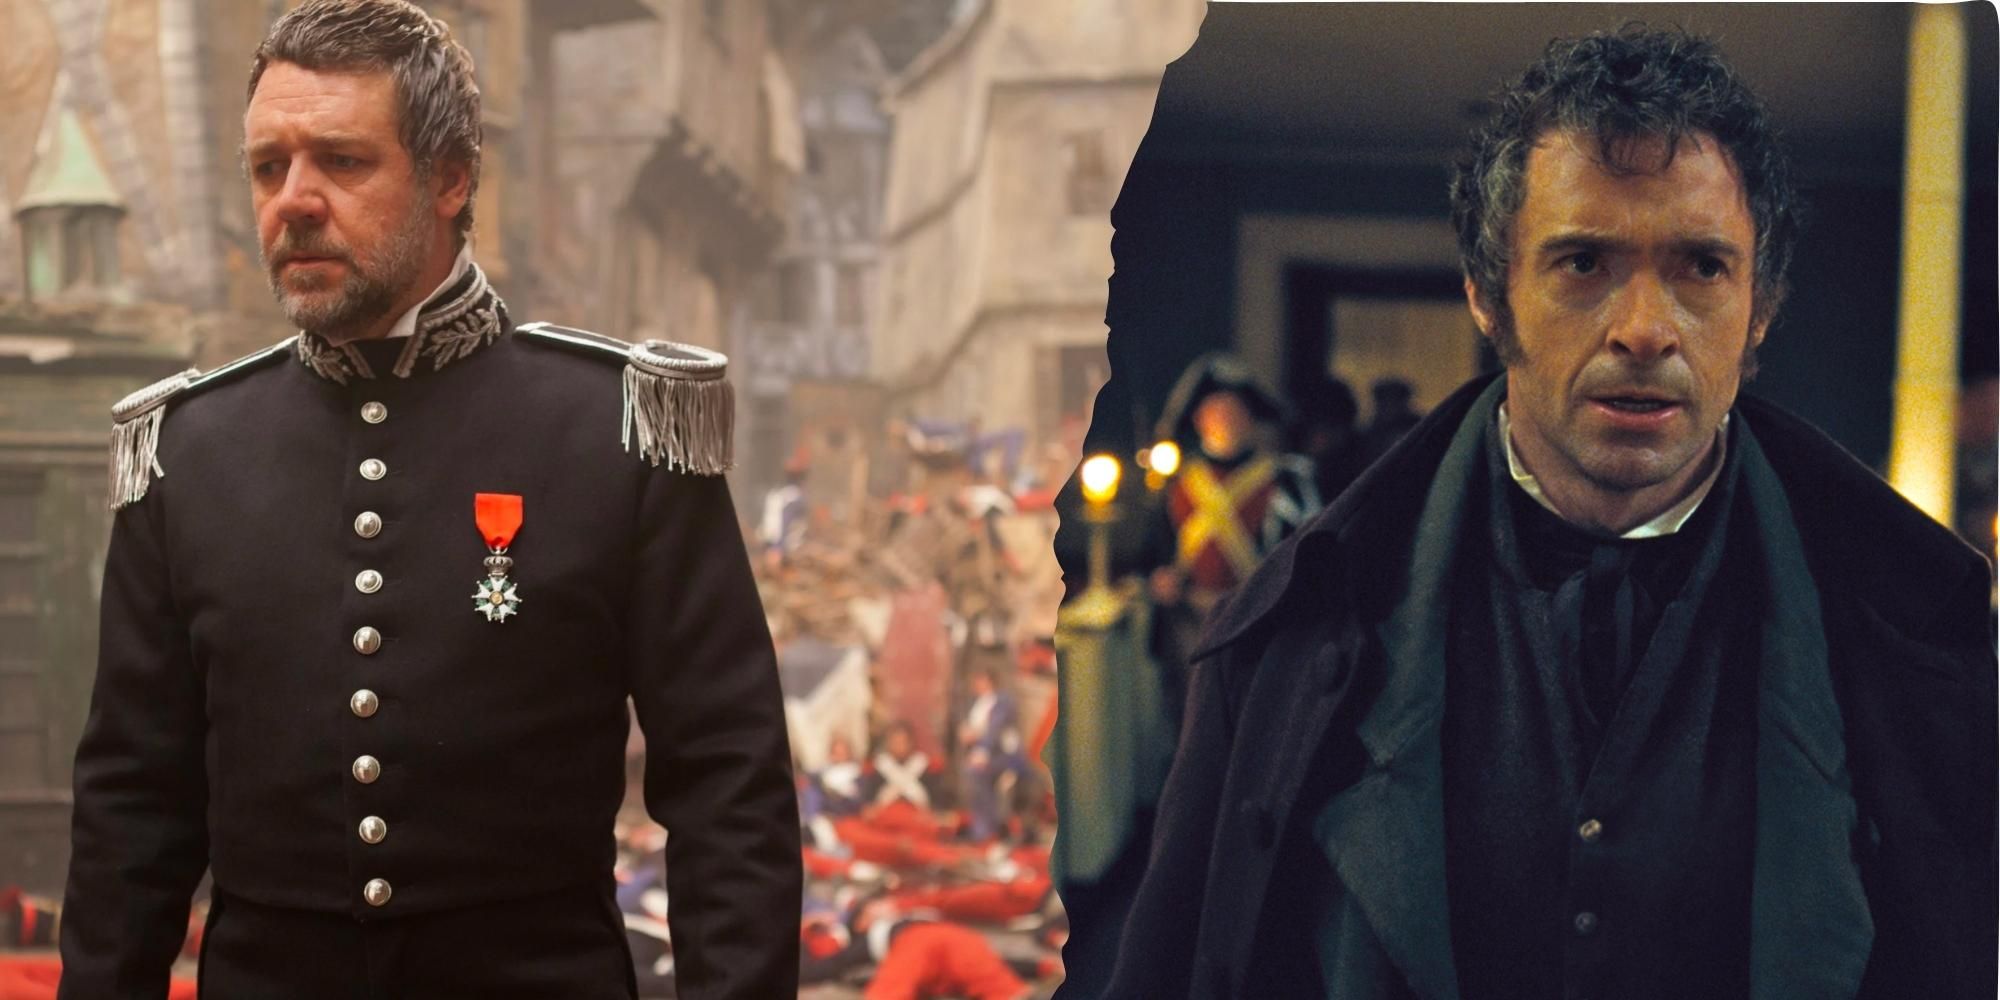 Russell Crowe as Javert looking sad next to Hugh Jackman as Jean Valjean in Les Miserable